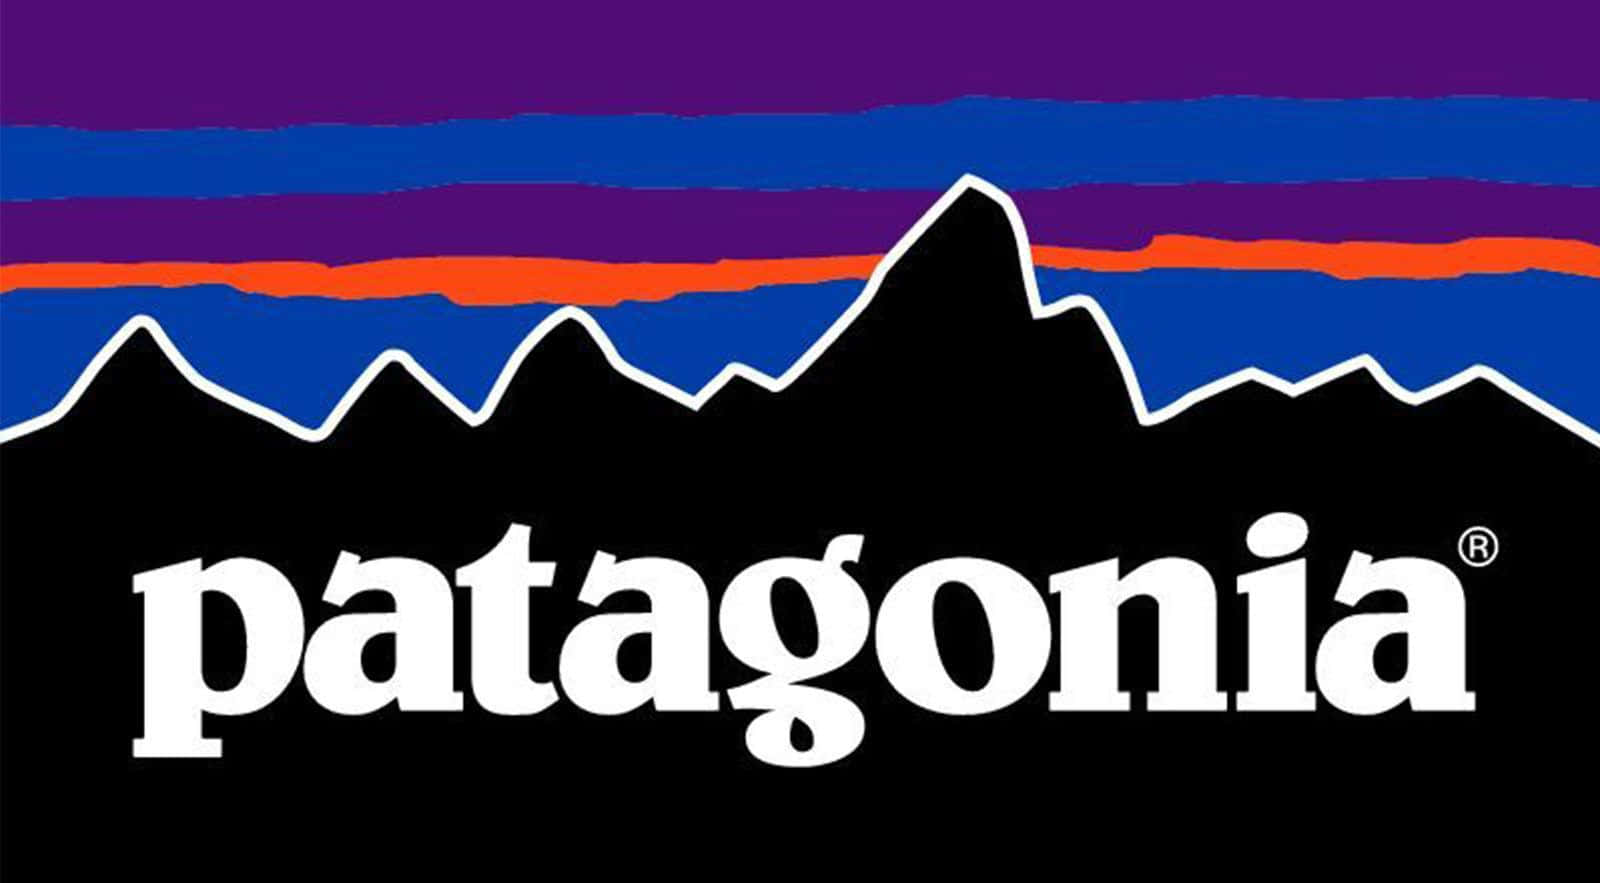 Patagonialogo Baggrund.